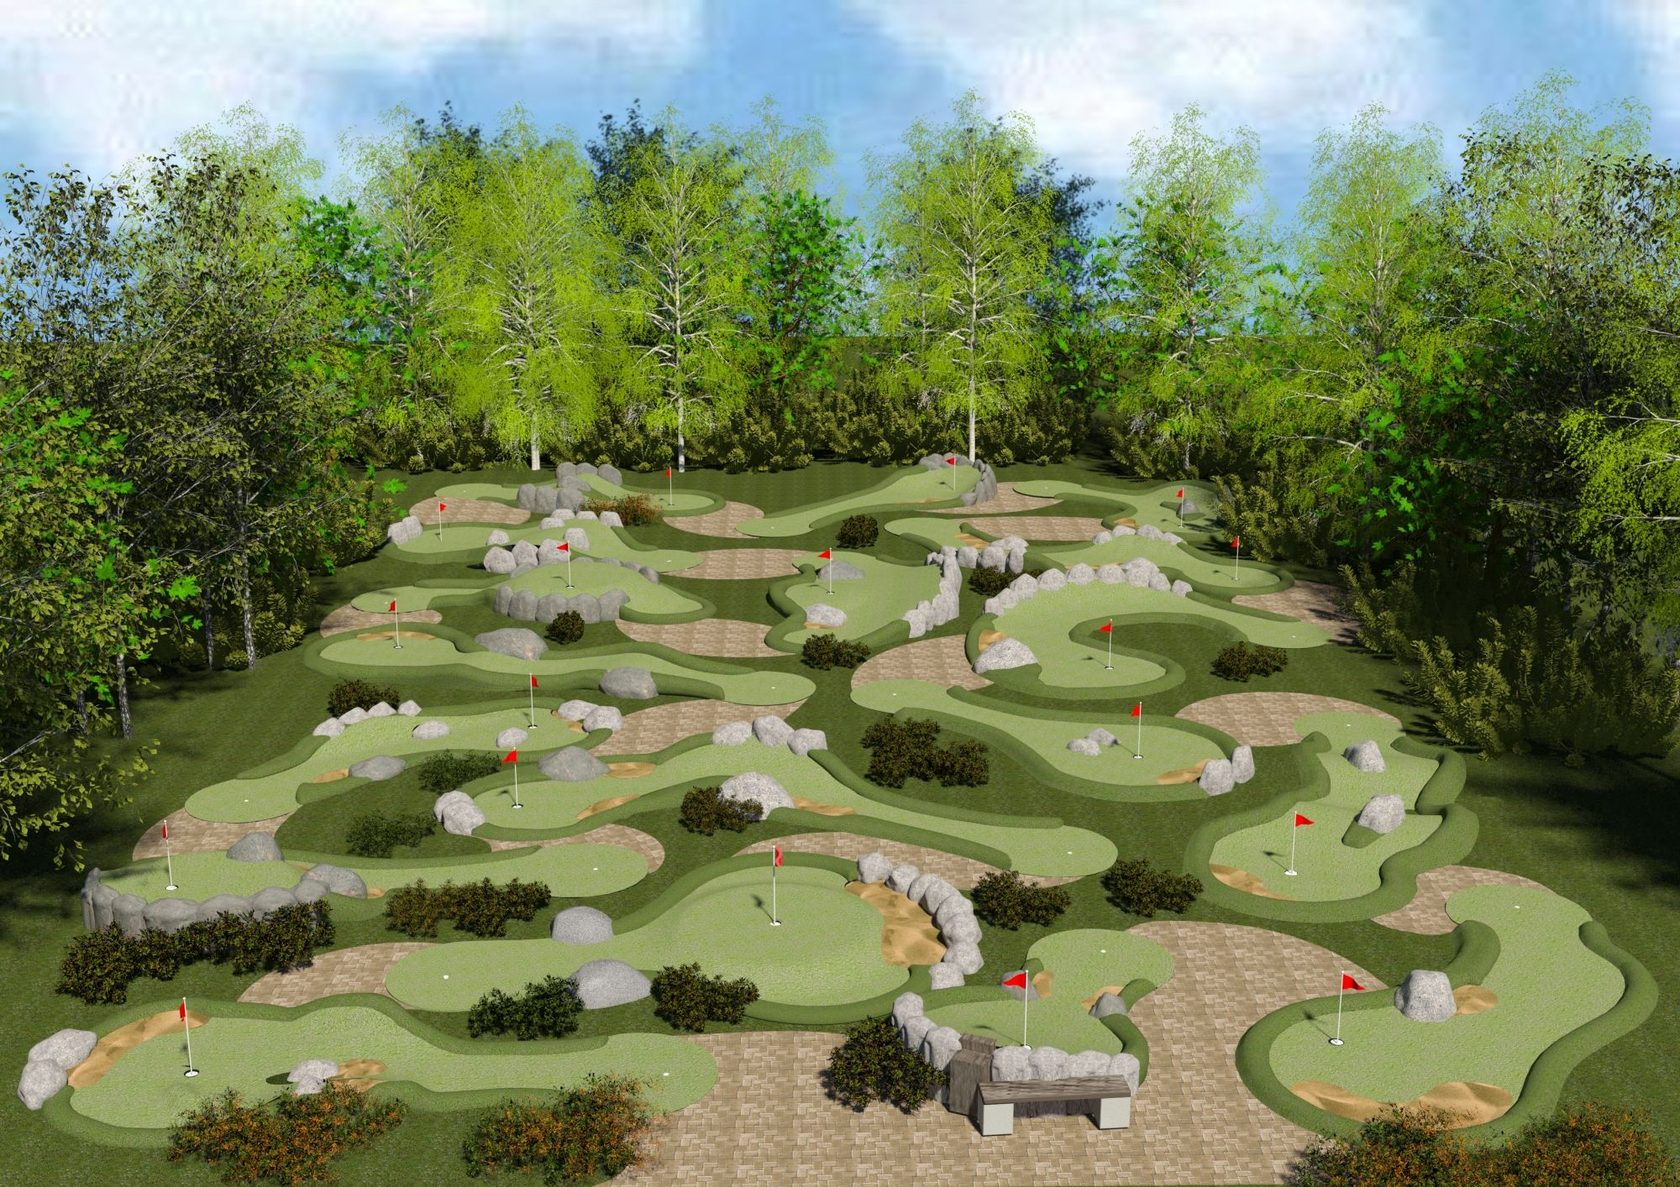 Как построить площадку для мини-гольфа?